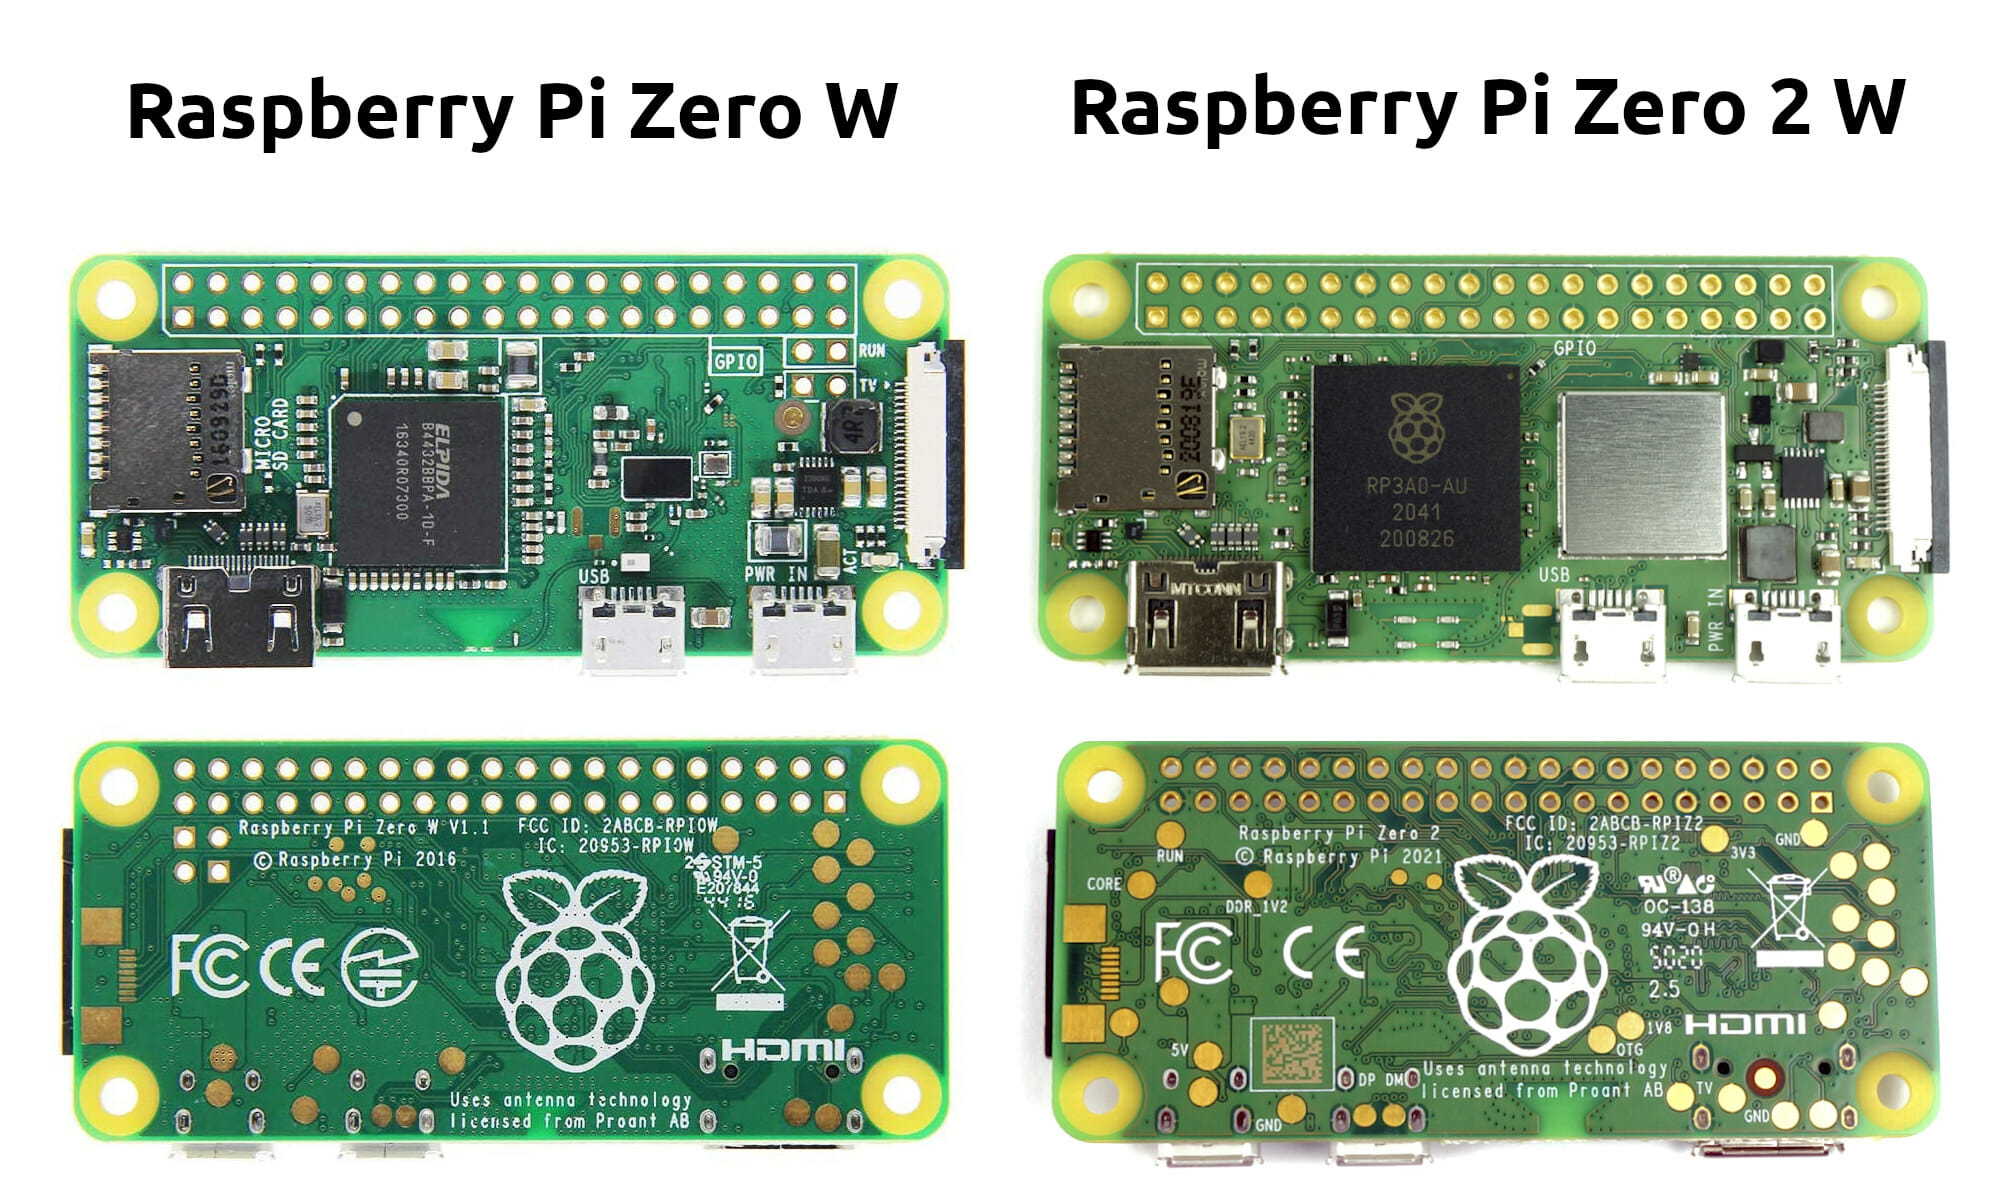 Raspberry Pi Zero 2 W and Zero W features comparison - CNX Software